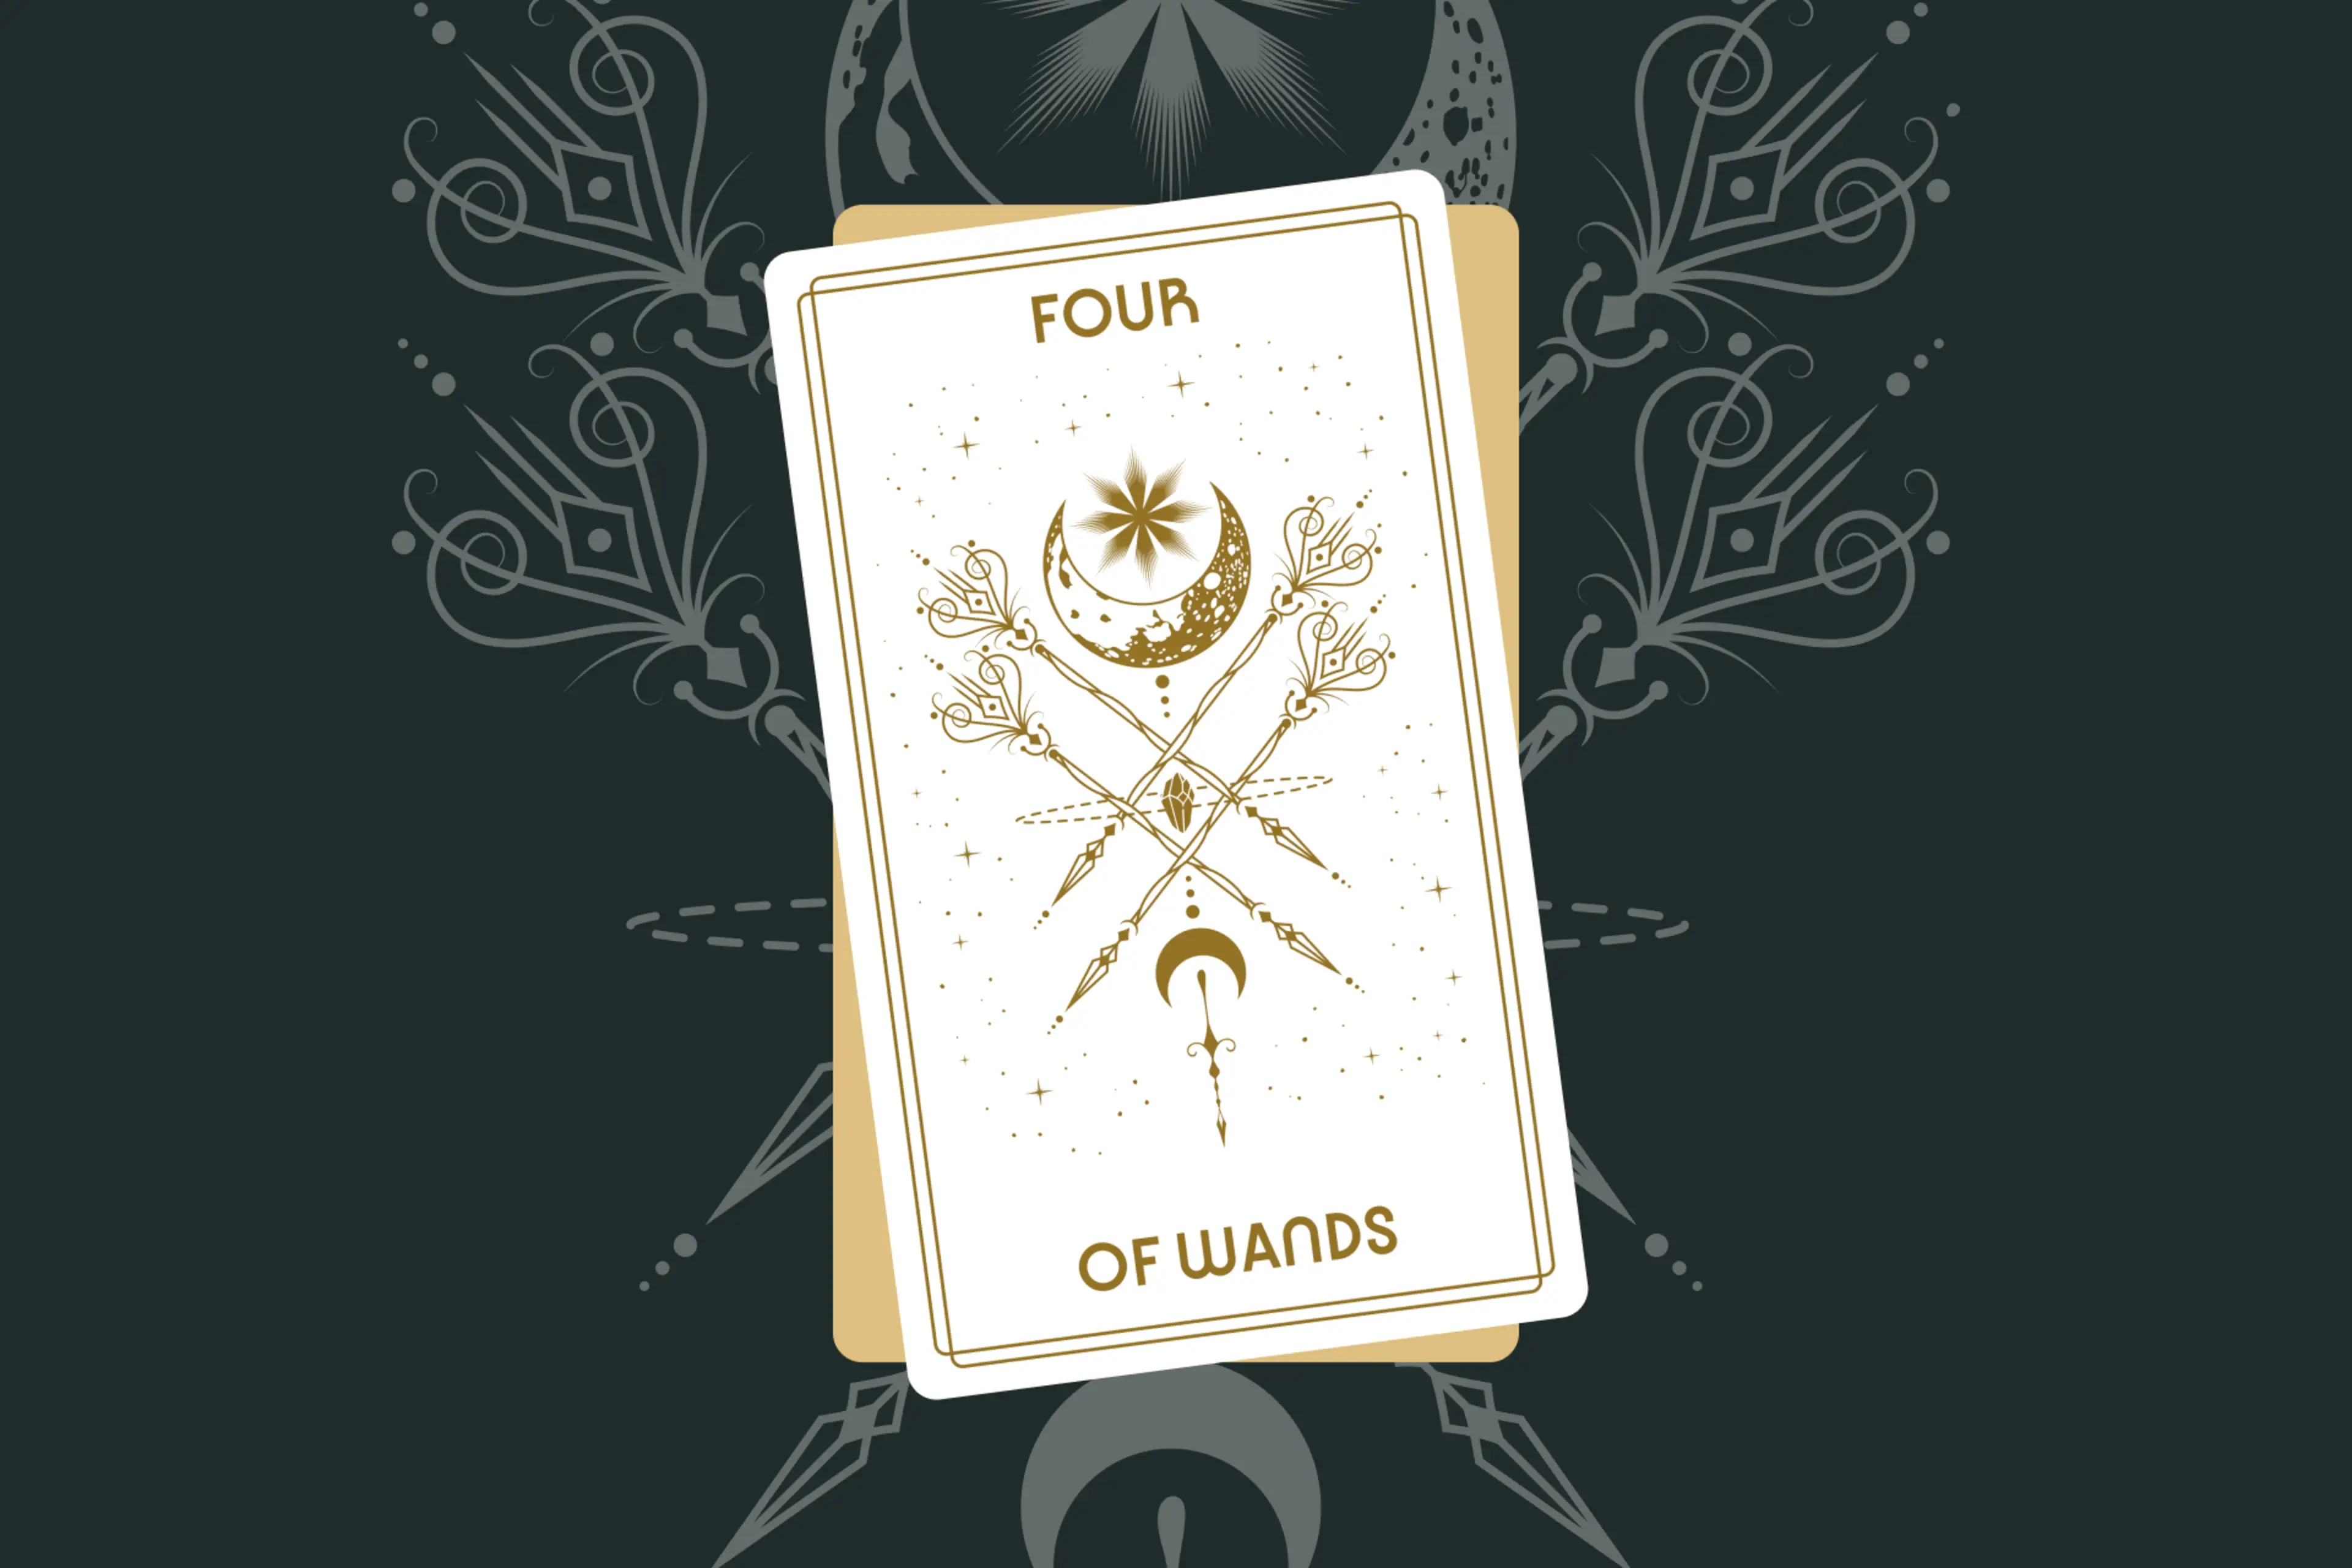 Four of Wands Tarot Card